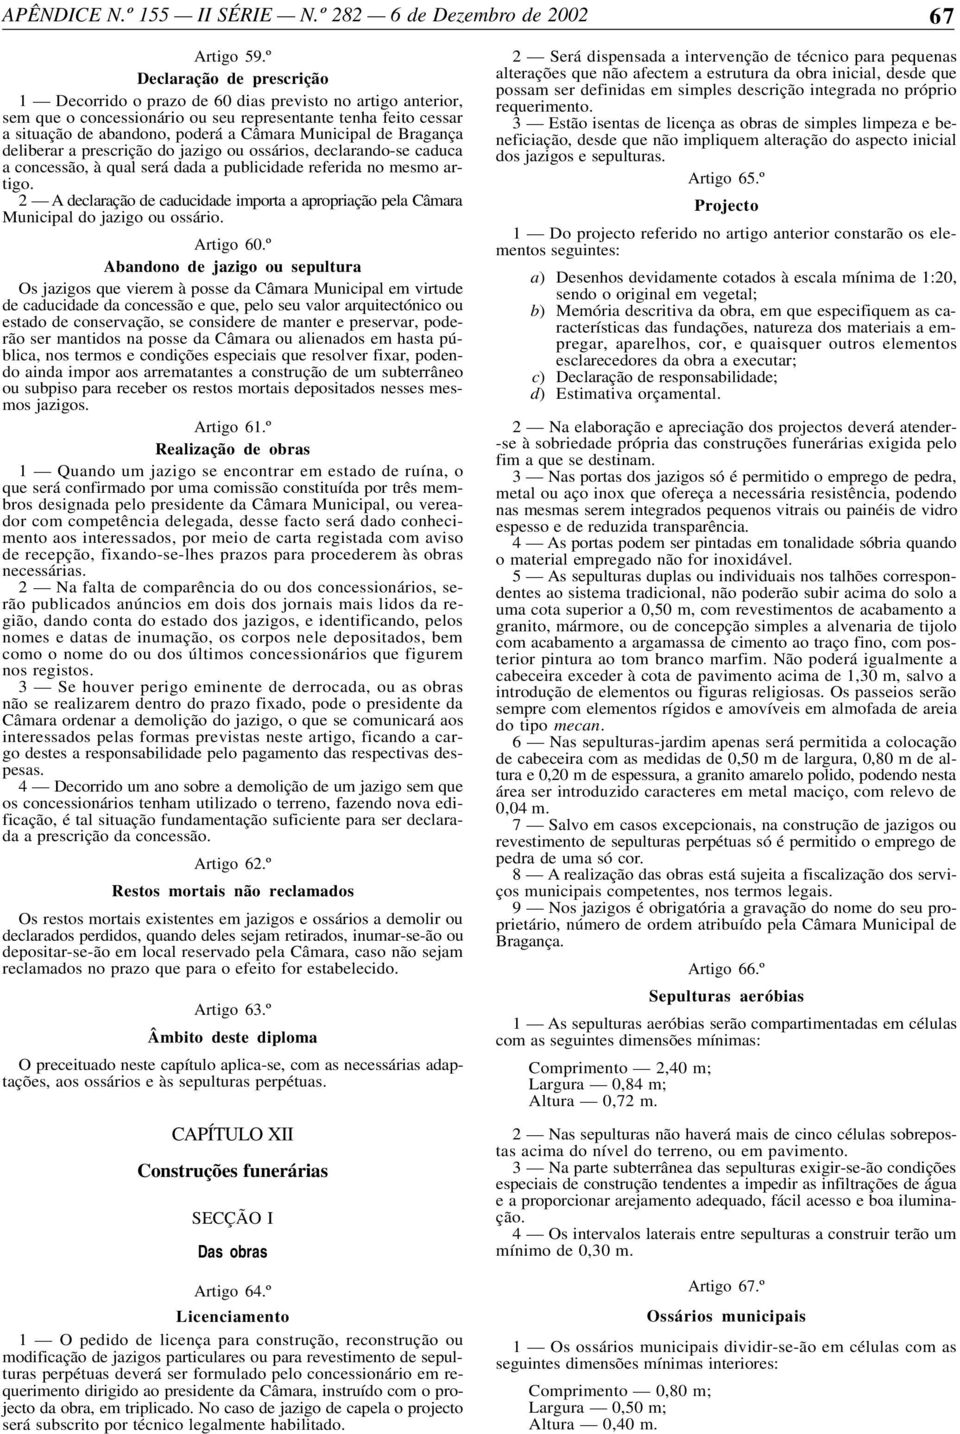 Municipal de Bragança deliberar a prescrição do jazigo ou ossários, declarando-se caduca a concessão, à qual será dada a publicidade referida no mesmo artigo.